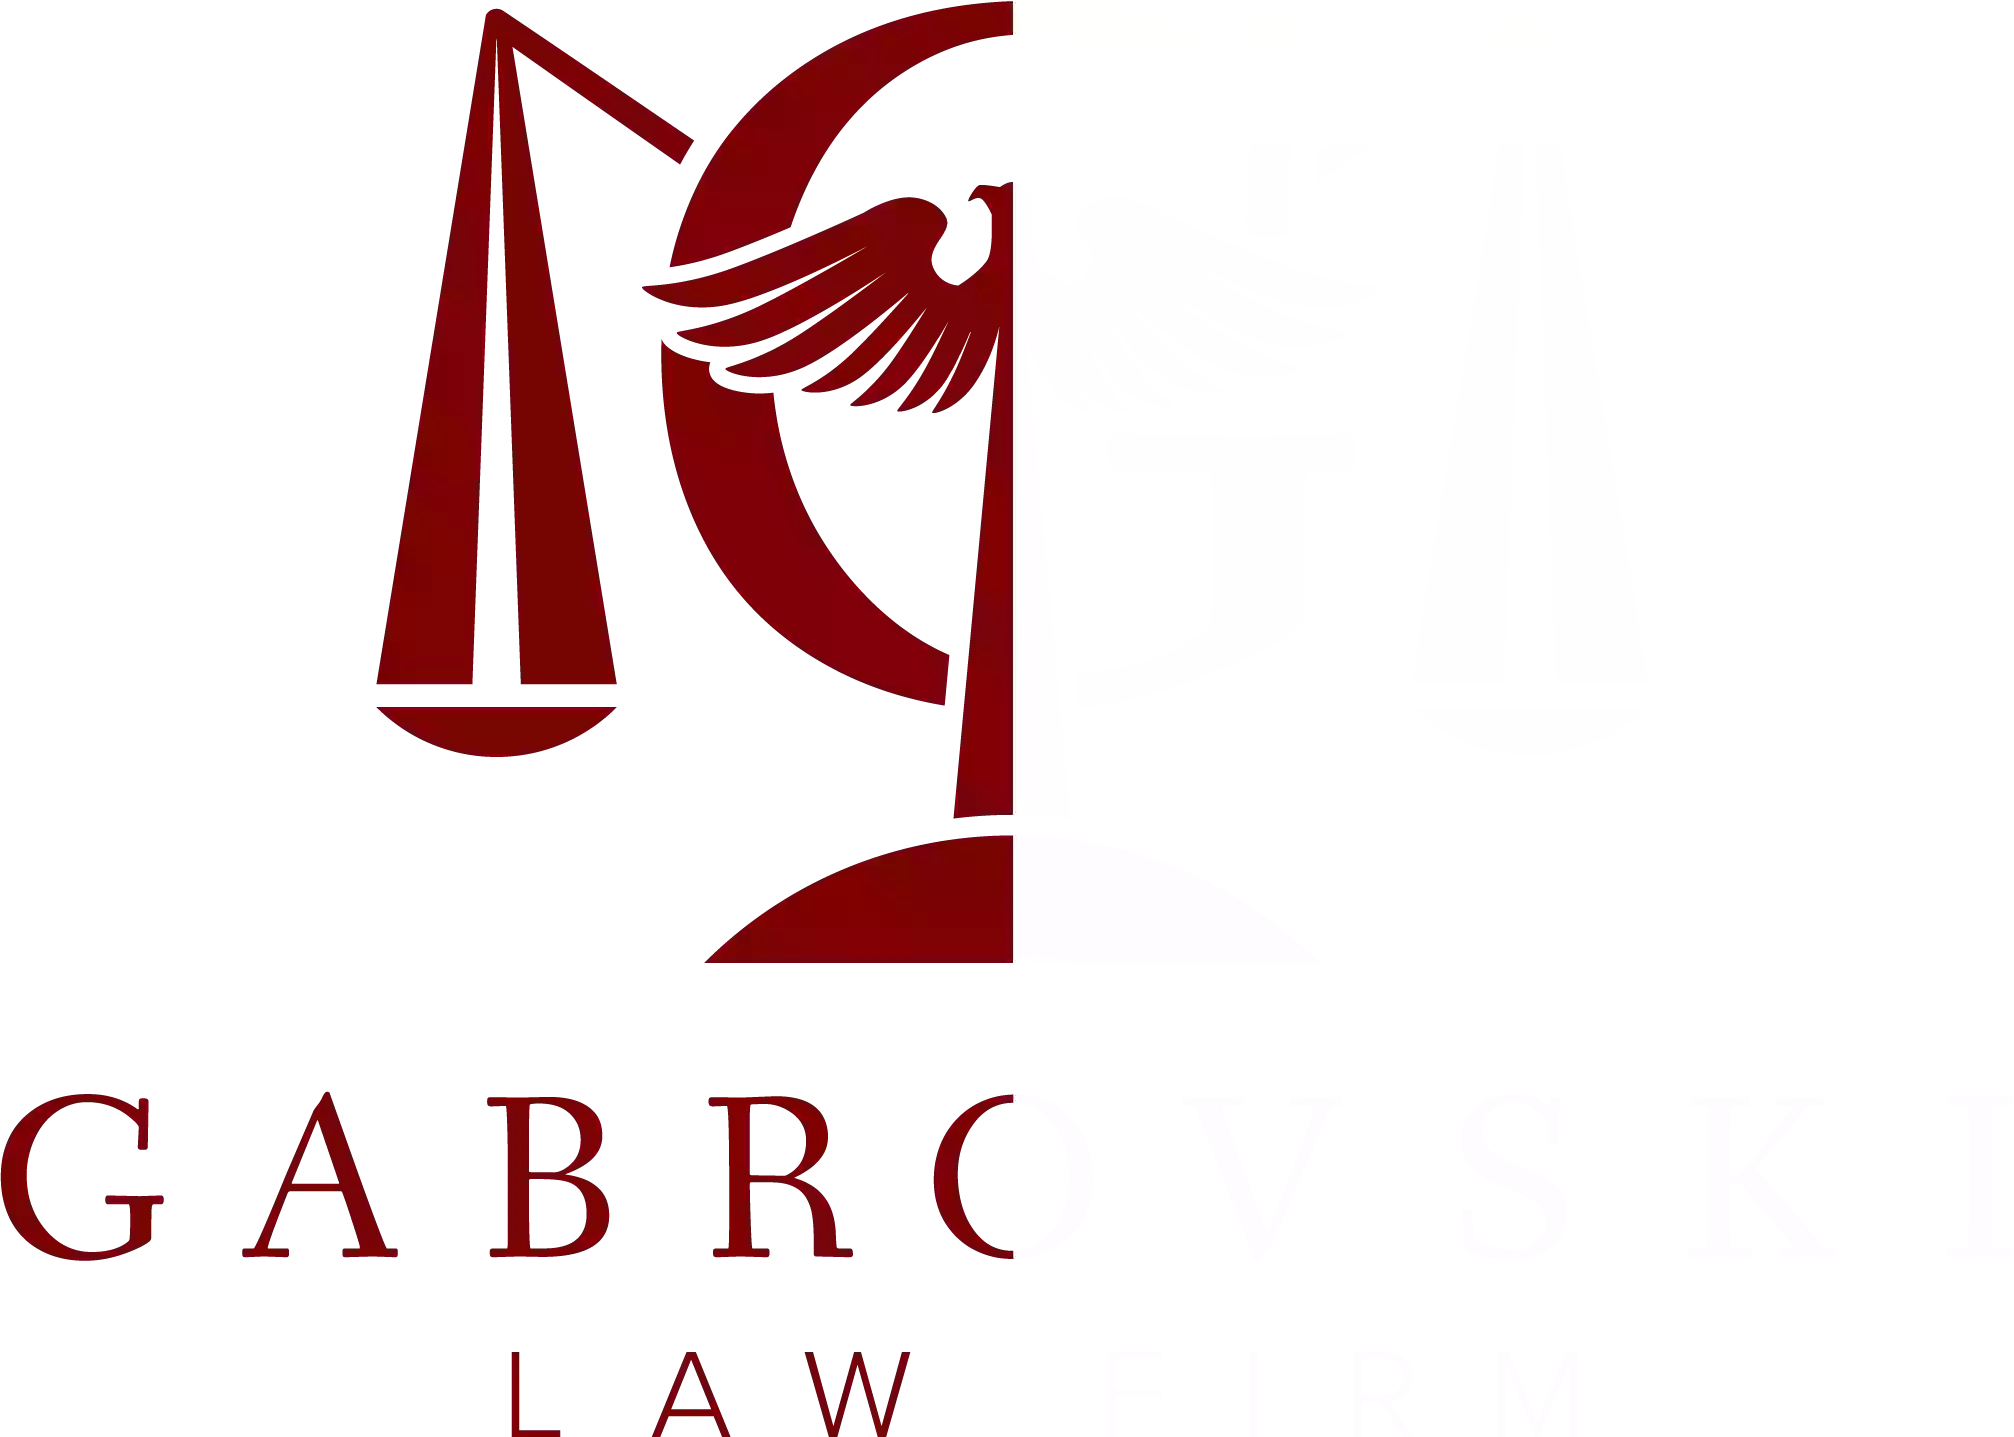 Gabrovski Law Firm